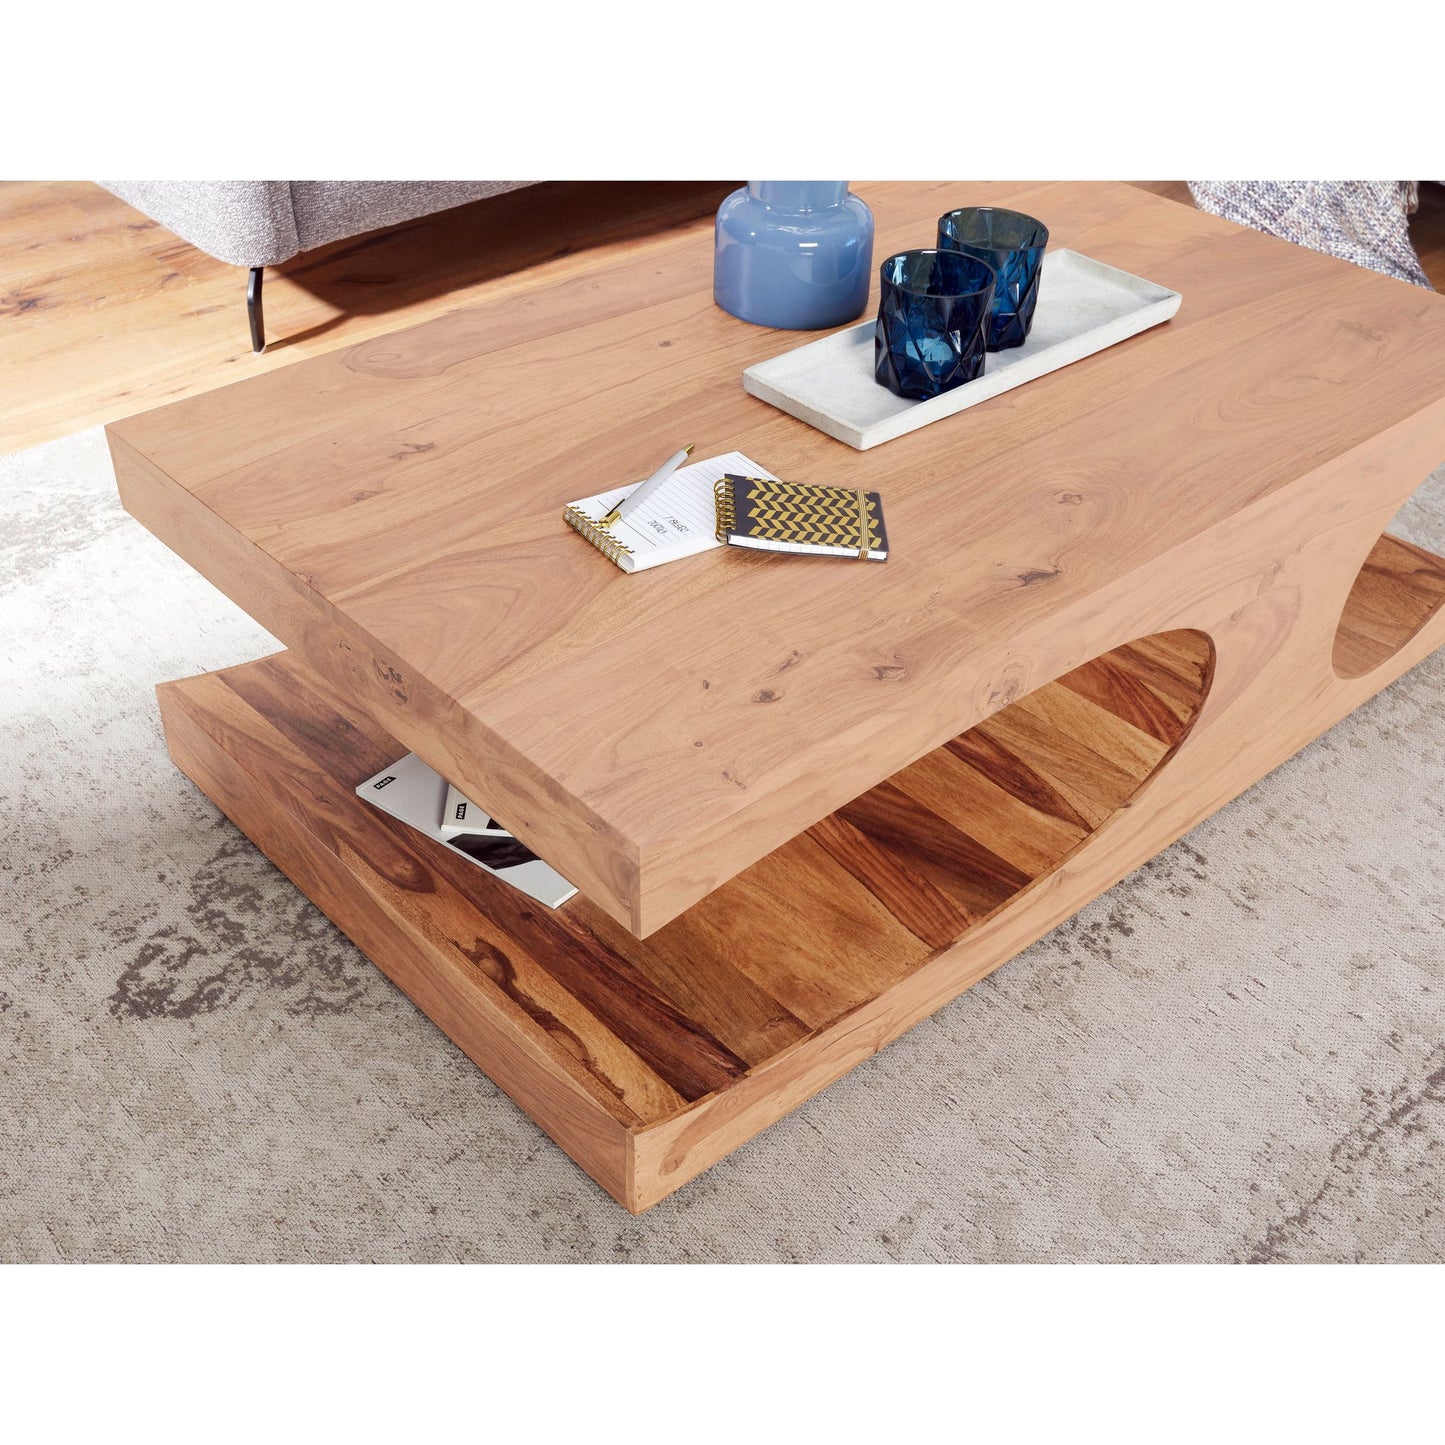 Table basse Reston de Nancy - Table basse en bois massif - Compartiments de rangement - Bois d'acacia - Marron